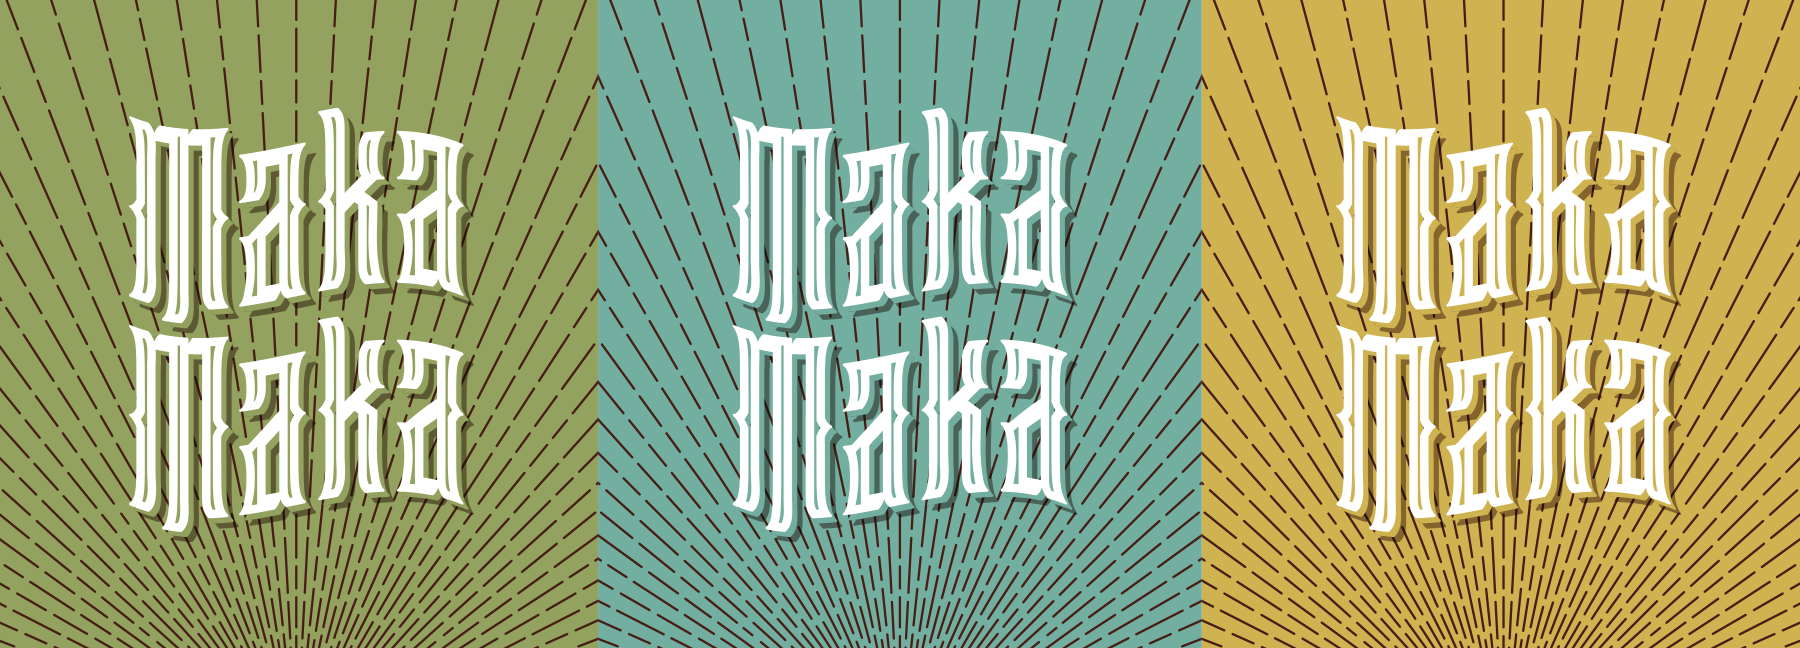 MAKA-stacked-logos.png